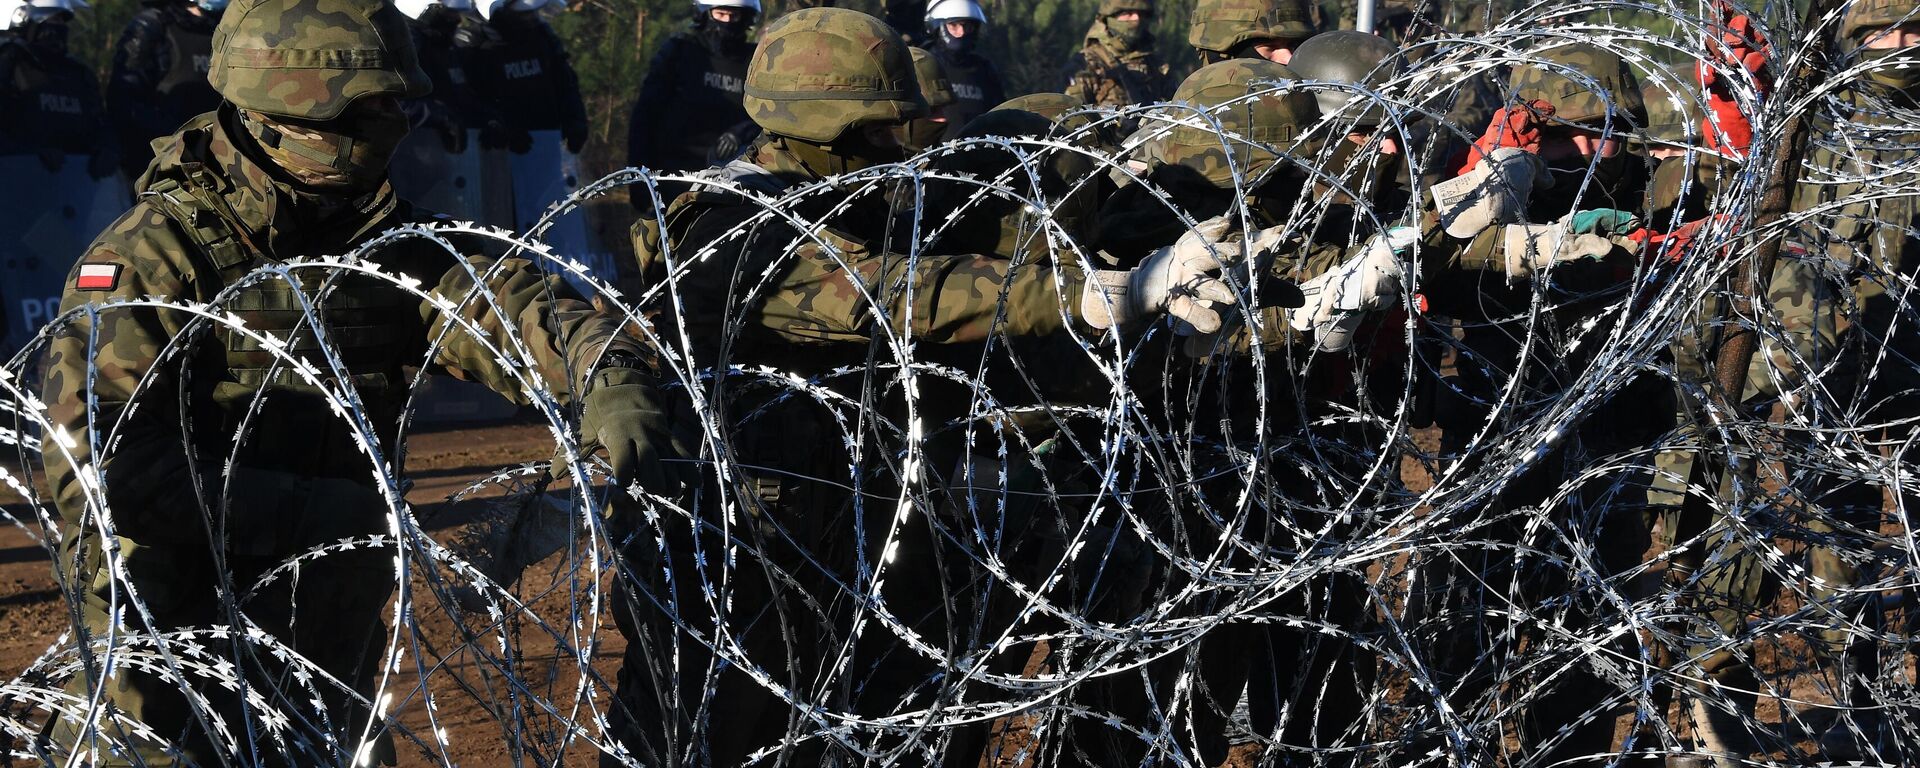 Польские военнослужащие устанавливают забор из колючей проволоки на польско-белорусской границе - Sputnik Грузия, 1920, 10.11.2021